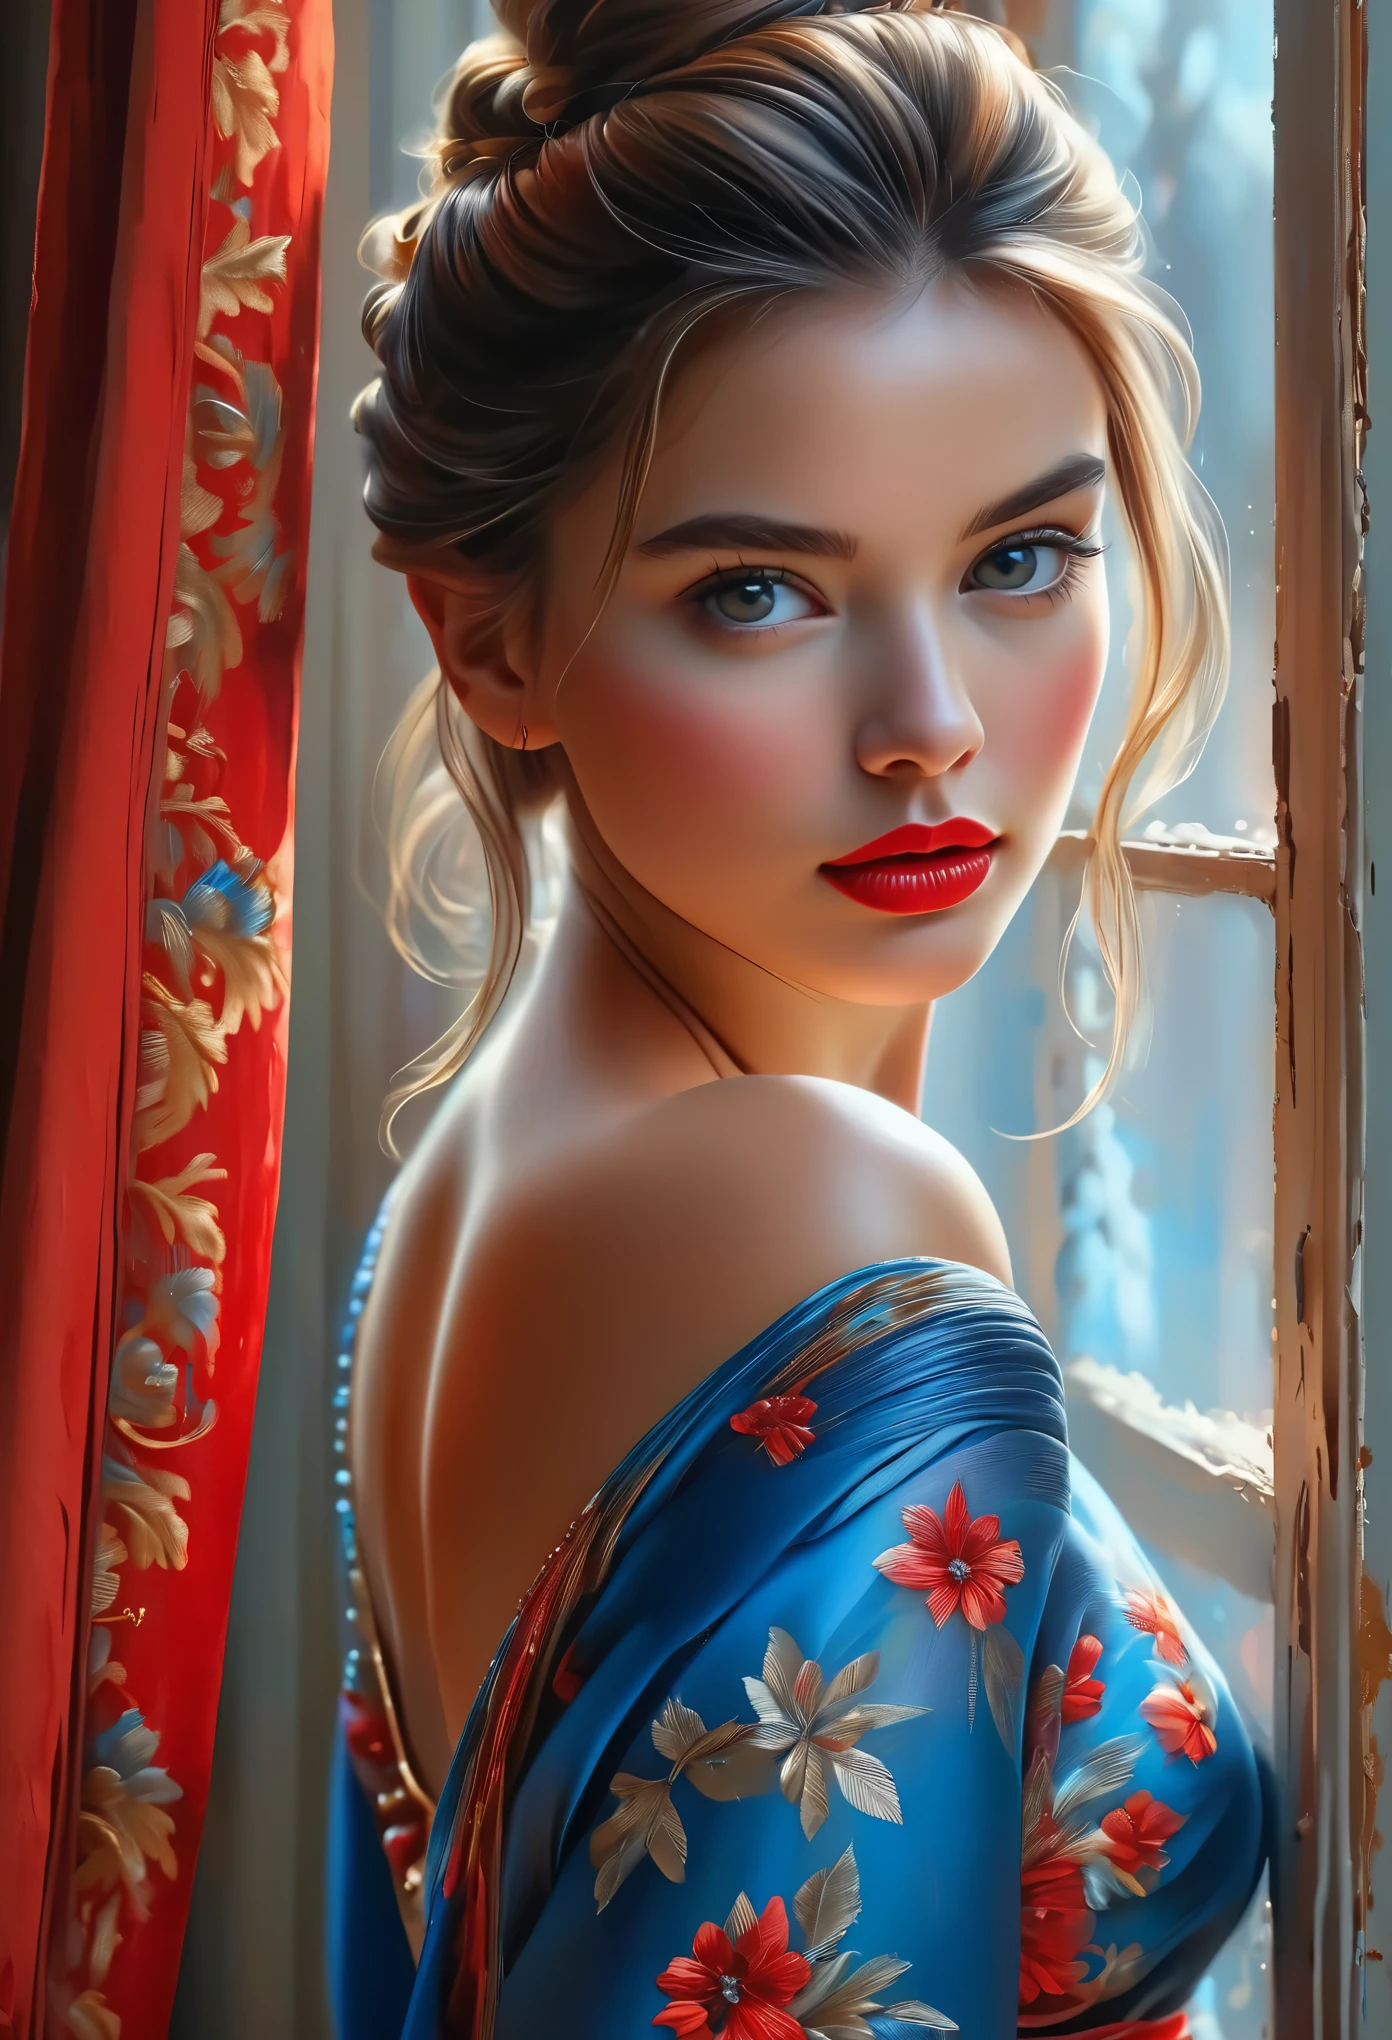 (最好的品質, 4k, 8K, 高解析度, 傑作: 1.2), (超詳細, 實際的, 逼真的:1.37)一個迷人的年輕女孩, 穿著引人注目的紅藍套裝, 站在窗前，神態堅韌堅毅. 她迷人的眼睛細節精緻, 捕捉每一個閃光和深度, 而她的雙唇則透著細緻的美感，既迷人又誘人. 細節水平延伸到她的整個臉部, 每個輪廓和特徵都經過精心渲染，力求完美, 創造一種超現實主義的感覺，吸引觀眾. 

女孩的著裝, 讓人想起油畫藝術, 本身就是一件艺术品. 布料, 精心製作，類似於充滿活力的筆觸, 為她的整體外觀增添了一抹活力. 這是藝術家才華的真實展現, 展現出高超的技藝, (NSFW:1.5), 髮髻髮型, 美麗的乳頭